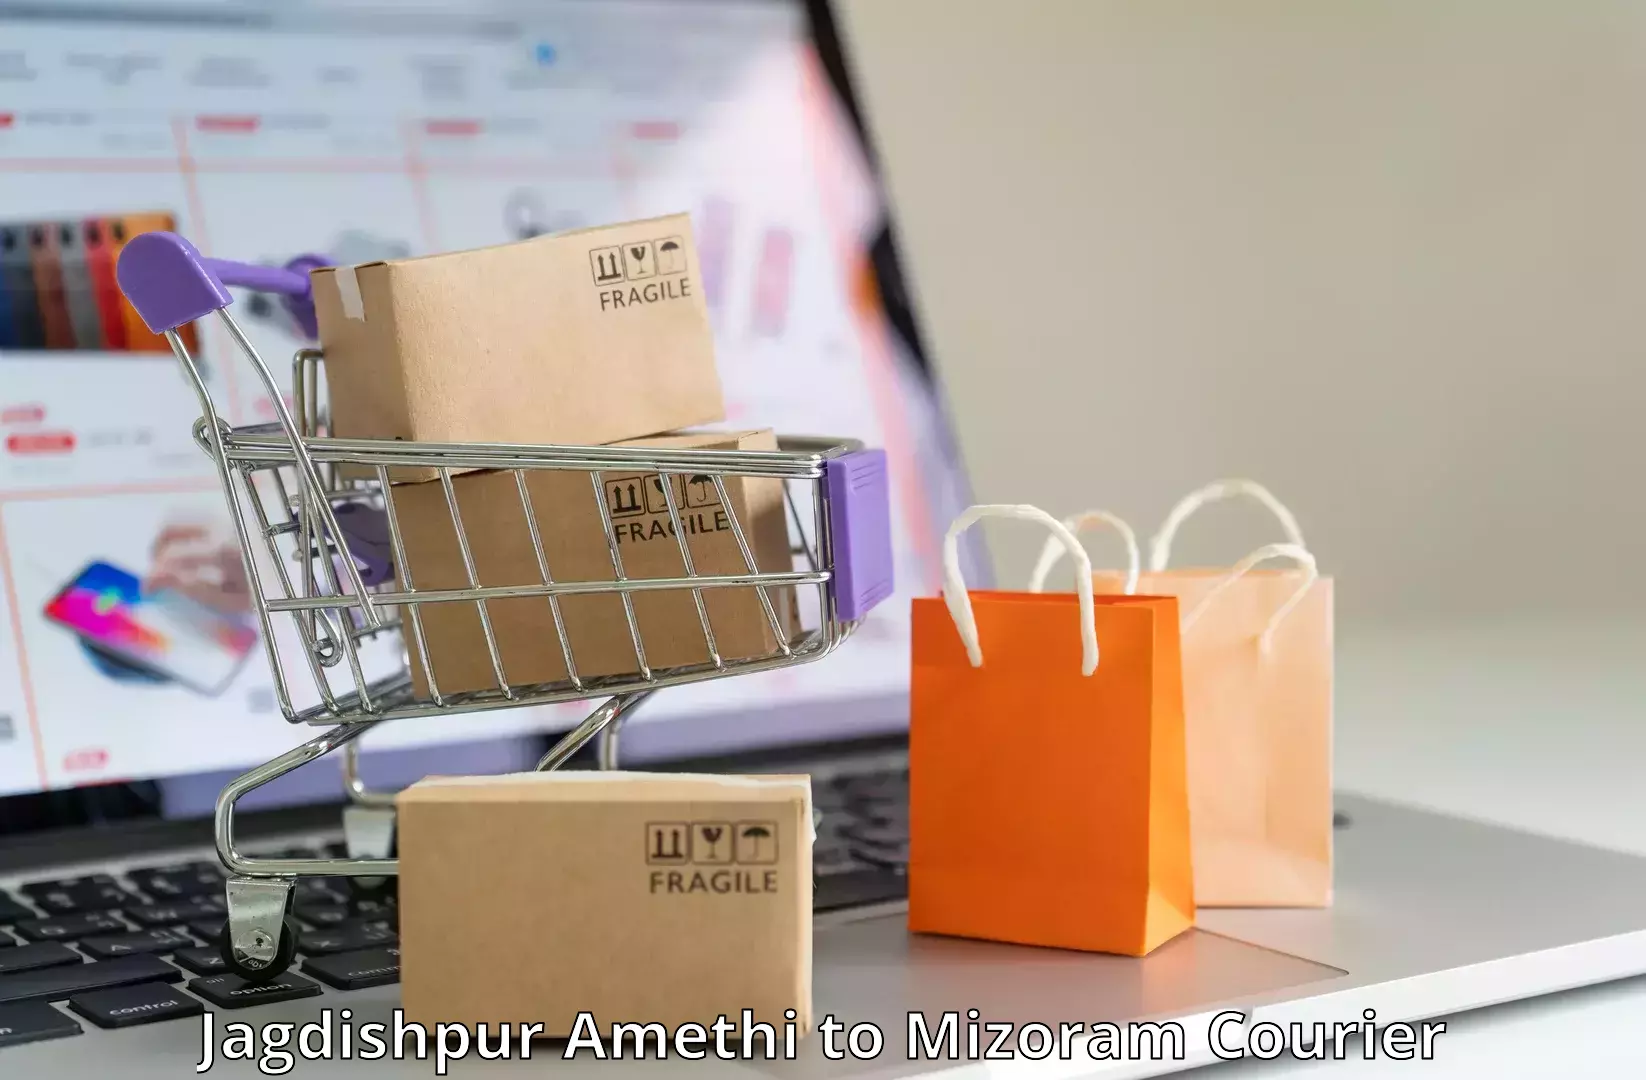 Customer-focused courier Jagdishpur Amethi to Siaha